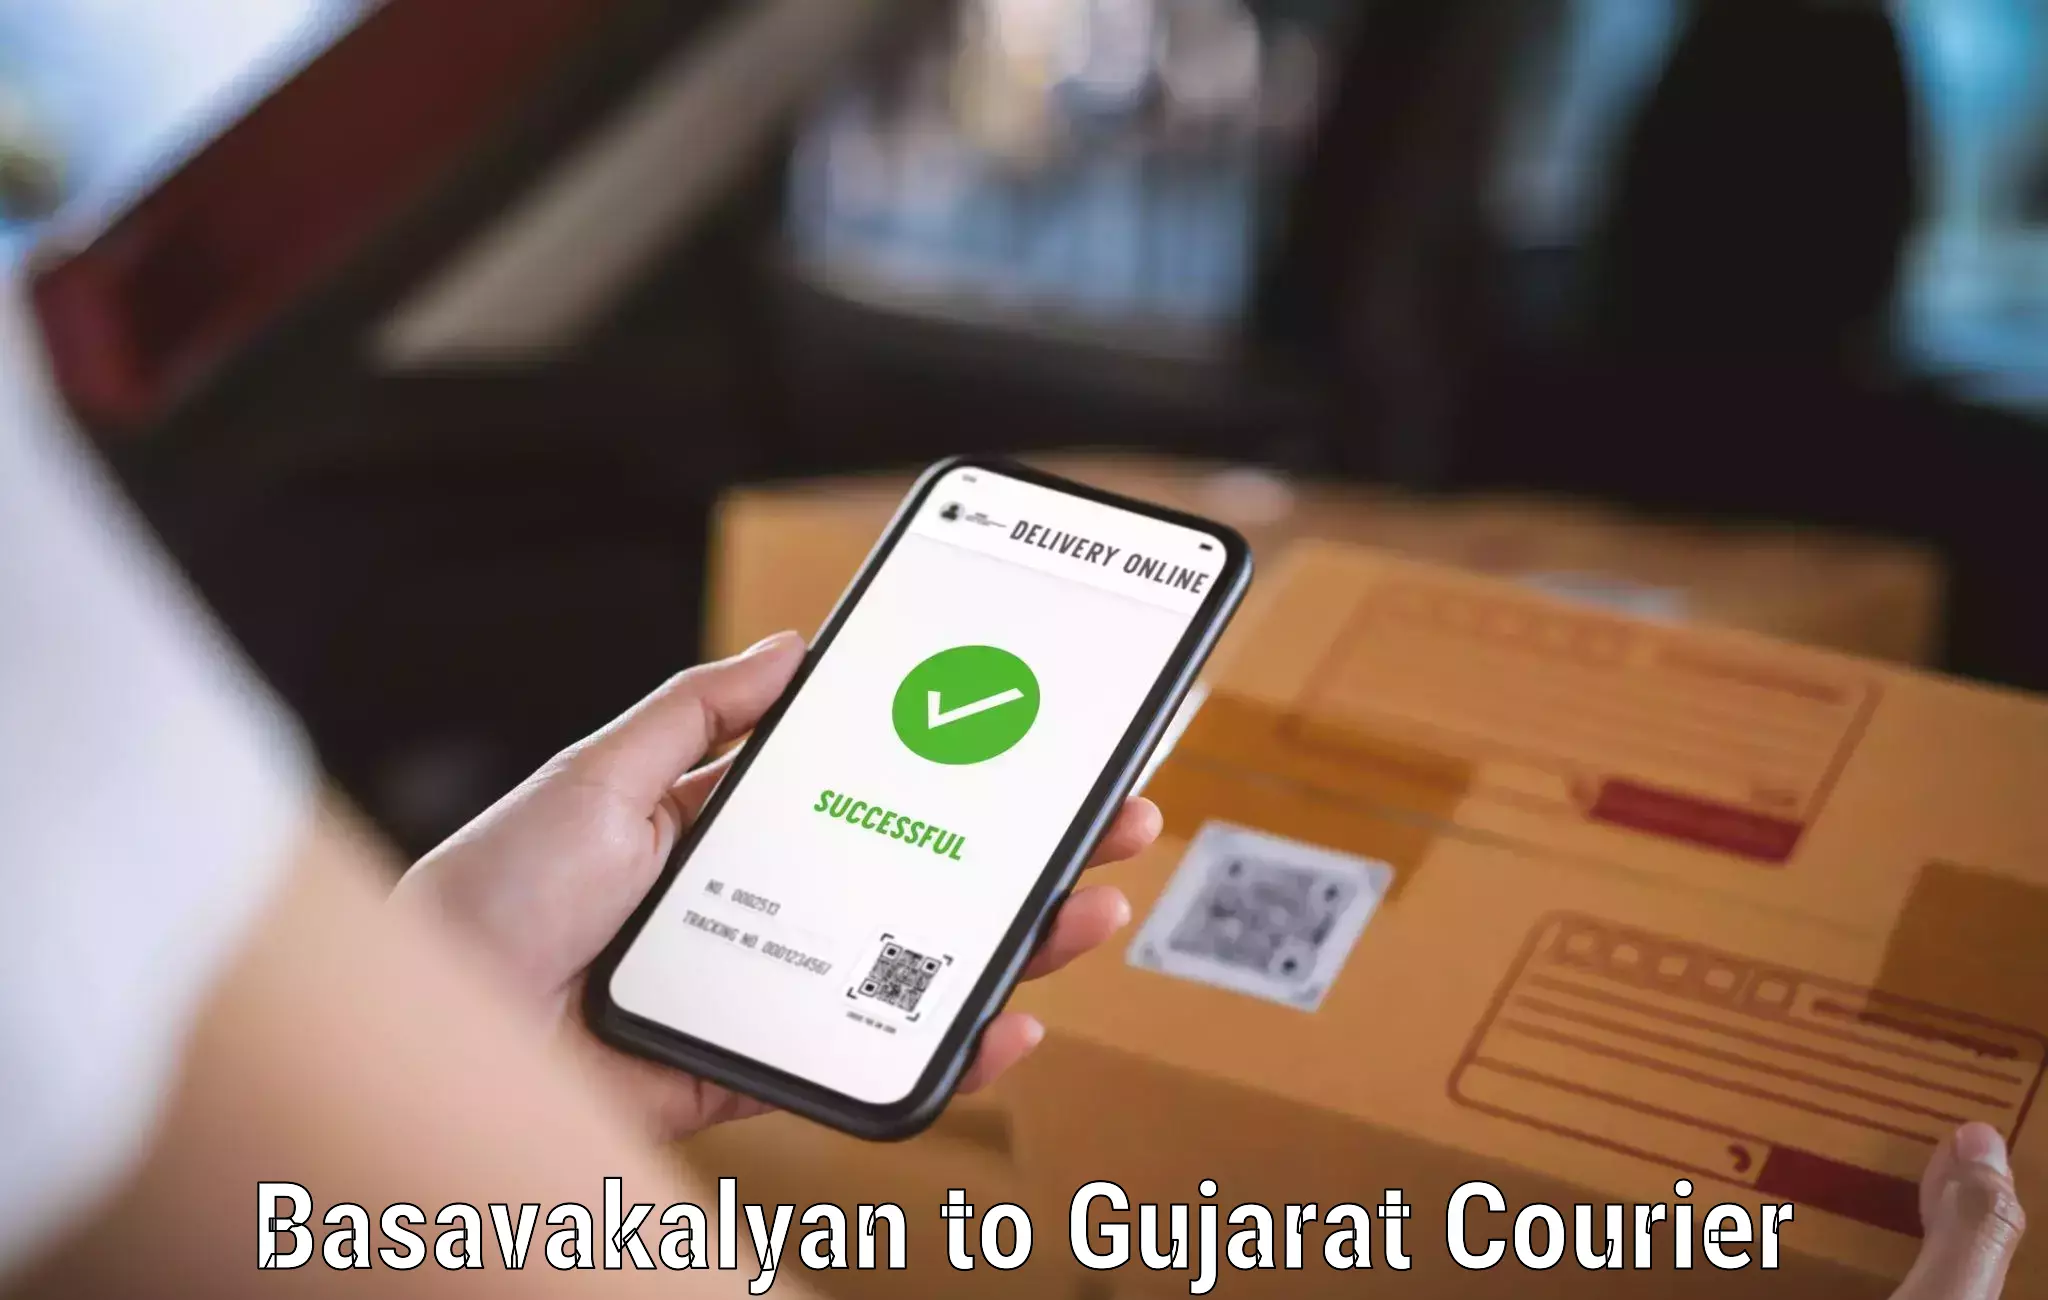 Courier dispatch services Basavakalyan to Patan Gujarat